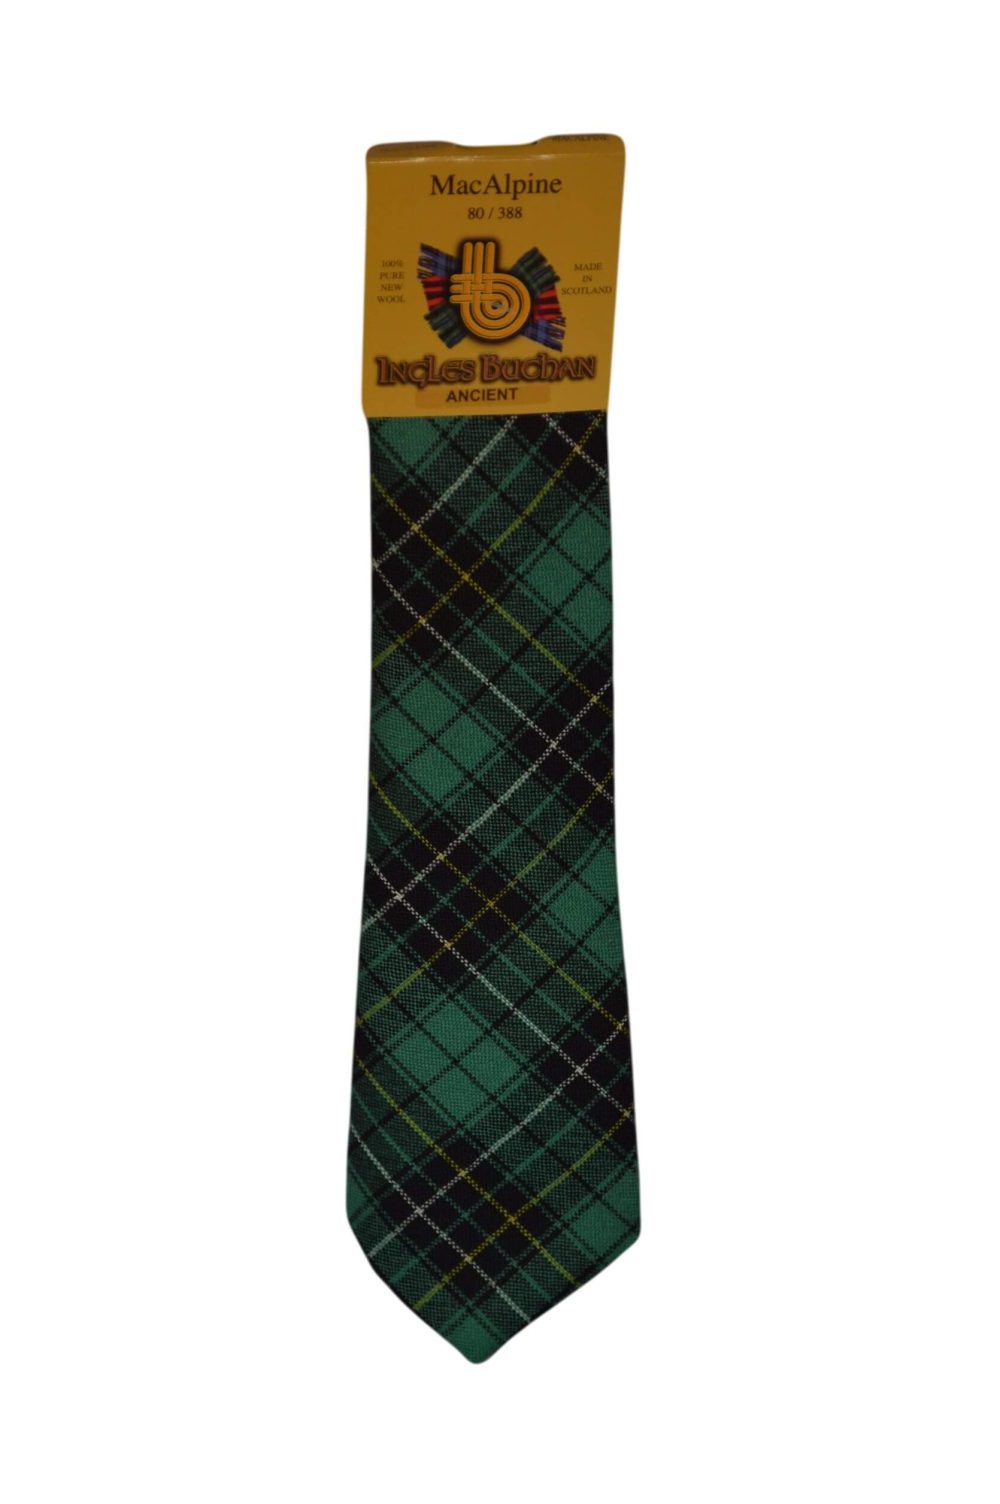 Men's Wool Tartan Tie - MacAlpine Ancient - Green, Black